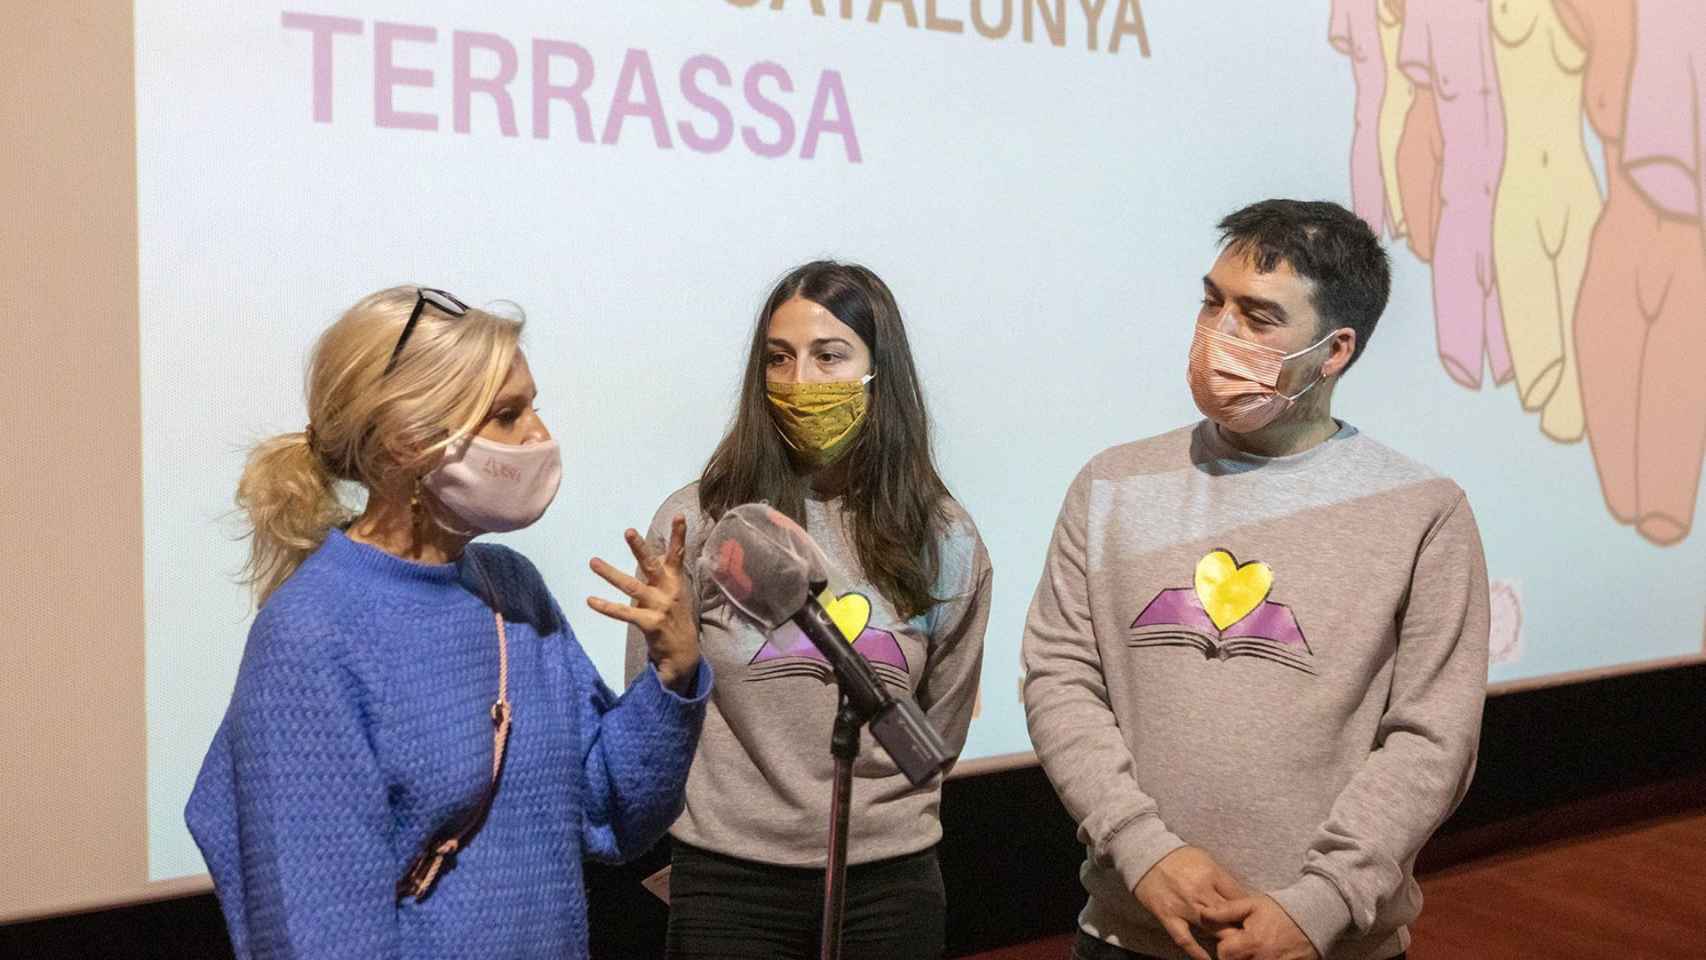 Los promotores del 'Sex Education Film Festival' junto a la actriz Rosa Boladeras, concejala de Cultura de Terrassa / EUROPA PRESS